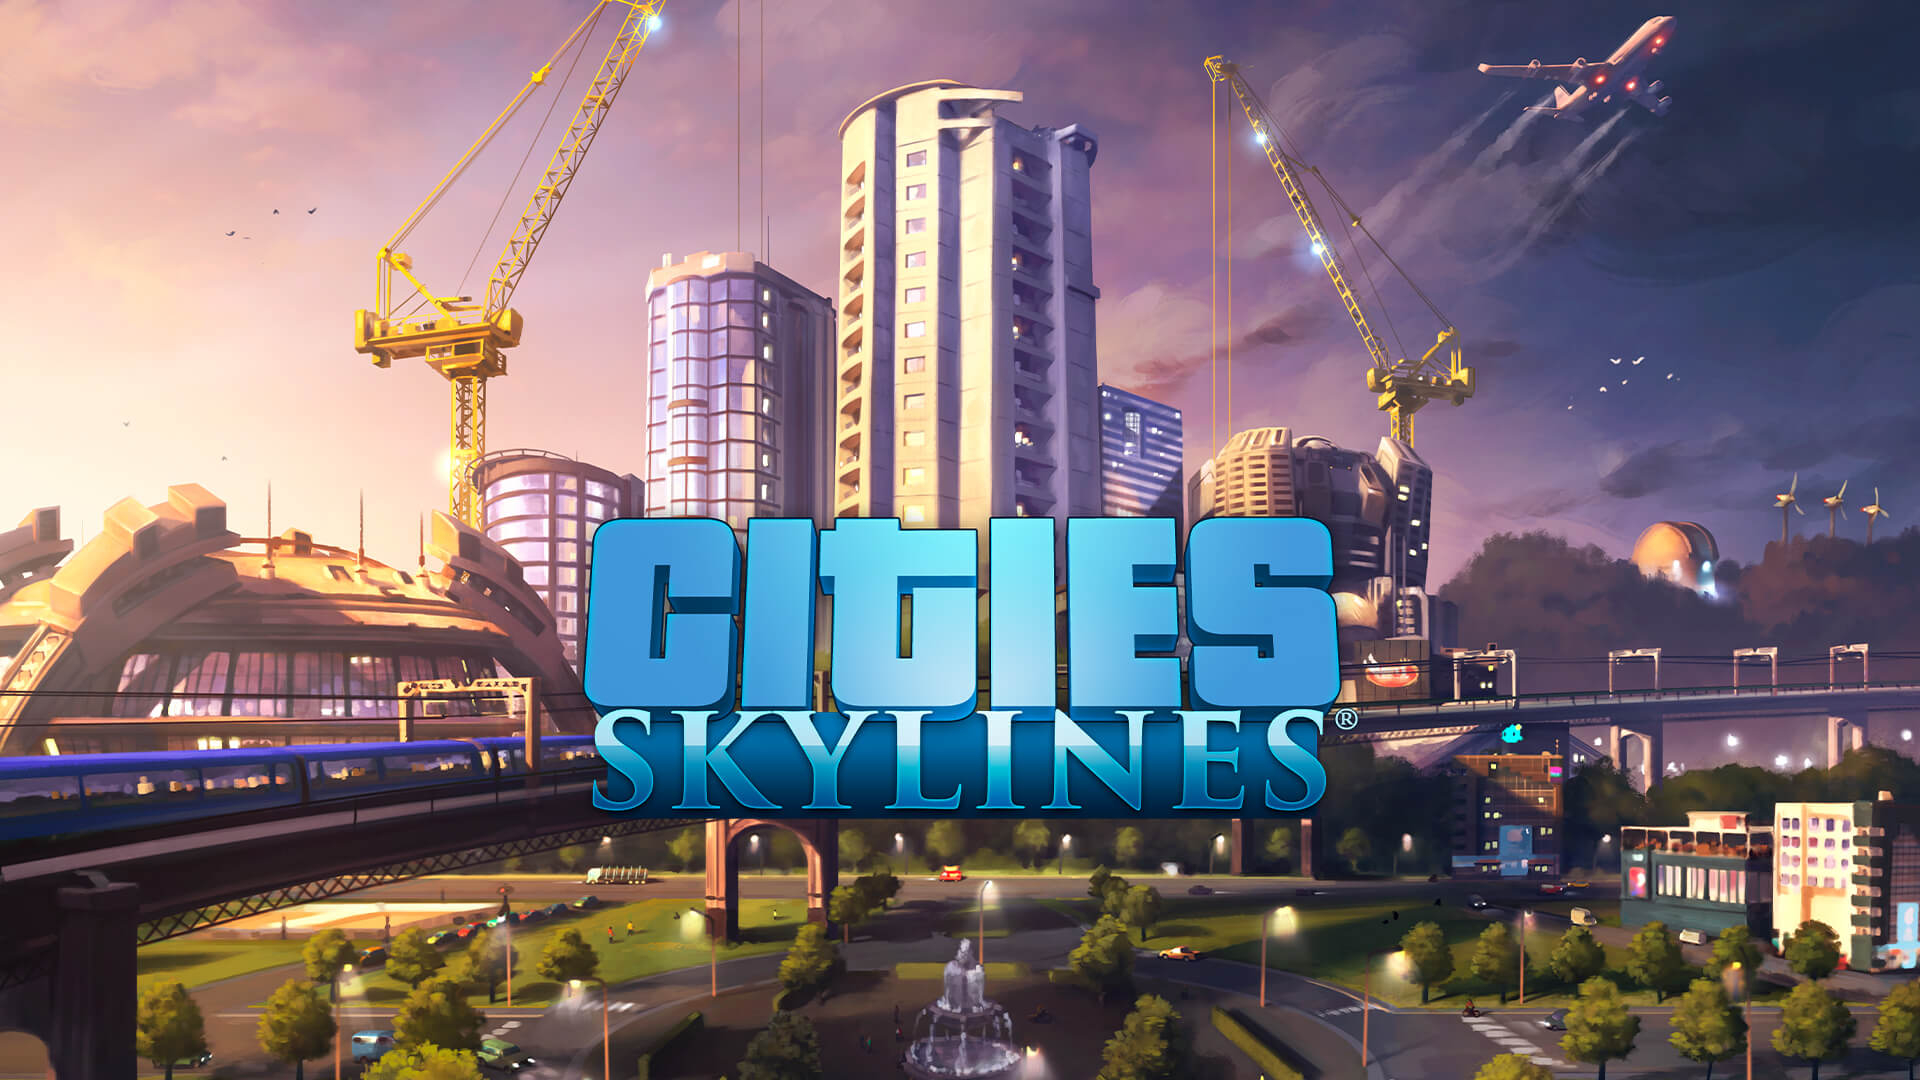 Обложка игры Cities: Skylines